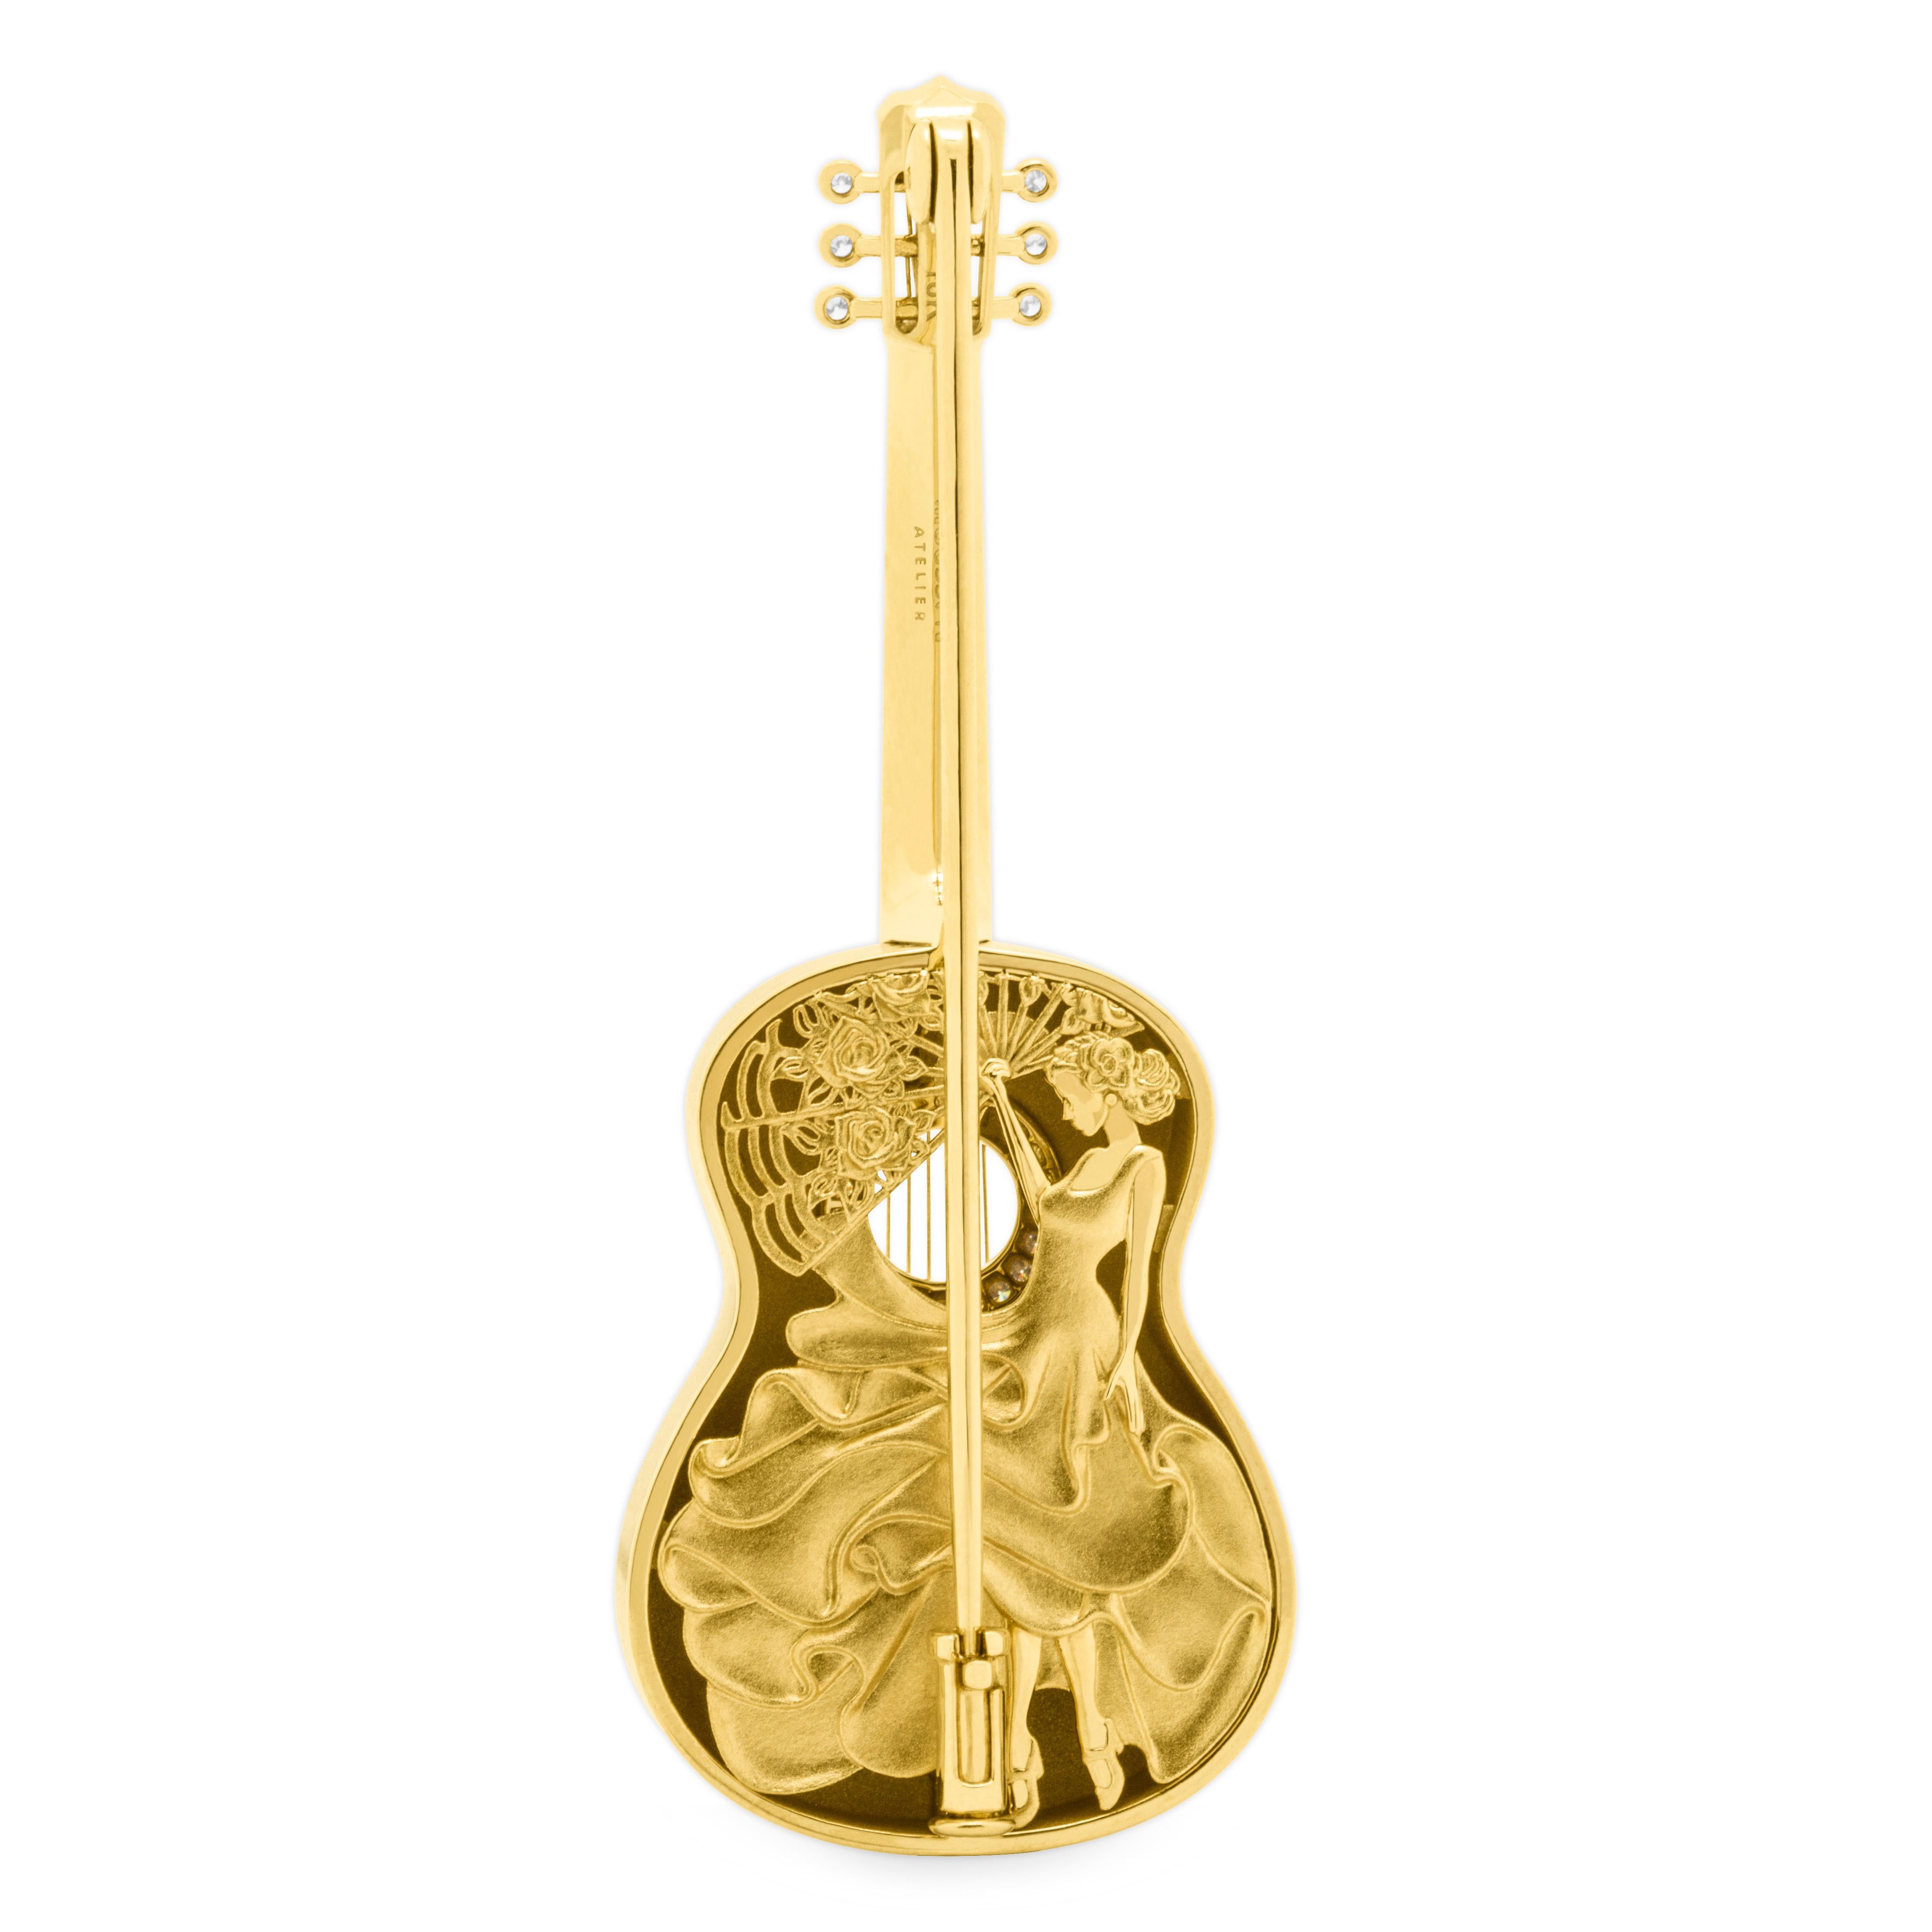 Gitarrenbrosche aus 18 Karat Gelbgold mit Diamanten und Emaille

Neue Brosche in unserer Collection 